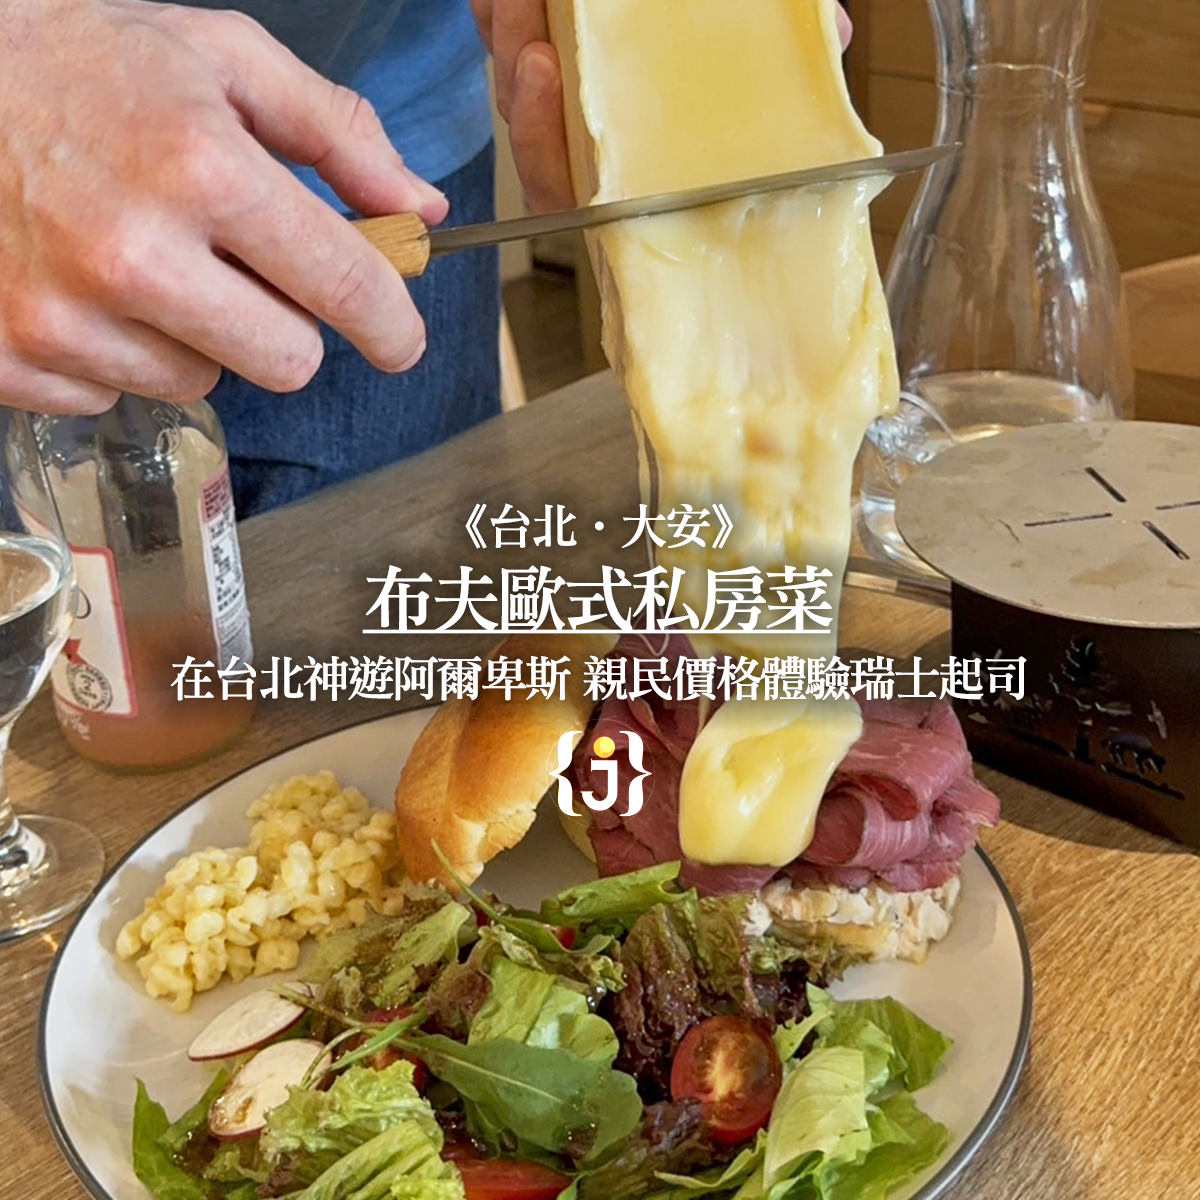 《台北‧大安》布夫歐式私房菜 在台北神遊阿爾卑斯 親民價格體驗瑞士起司